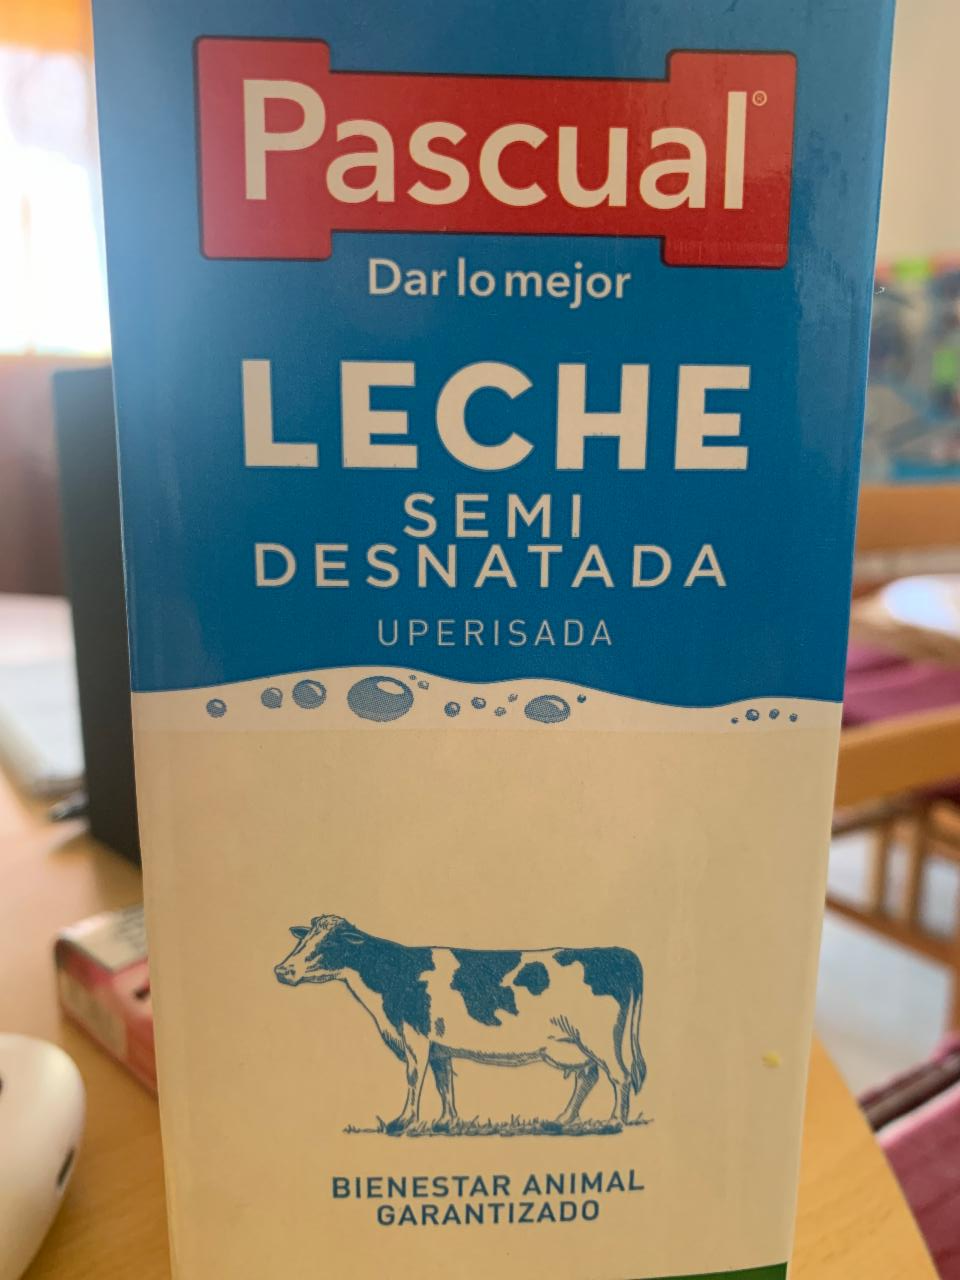 Фото - молоко полуобезжиренное Pascual